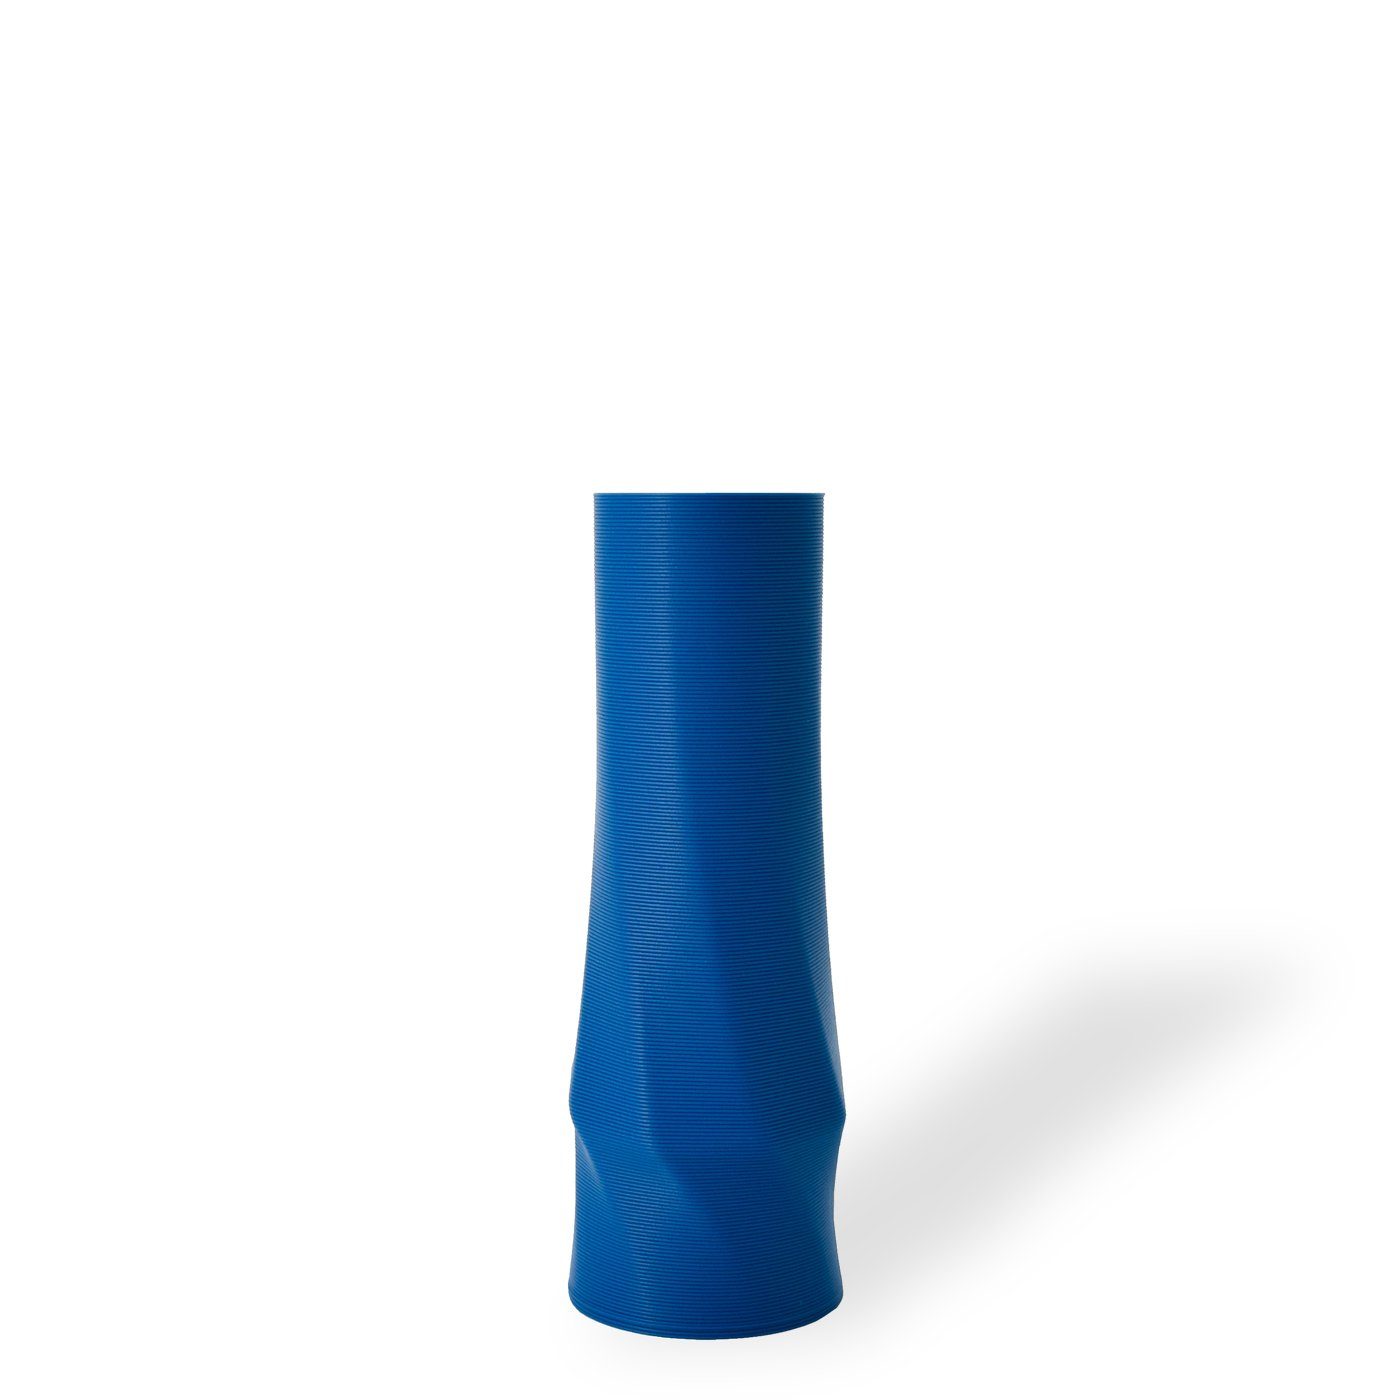 Shapes - Decorations Dekovase the vase - circle (basic), 3D Vasen, viele Farben, 100% 3D-Druck (Einzelmodell, 1 Vase), Wasserdicht; Leichte Struktur innerhalb des Materials (Rillung) blau